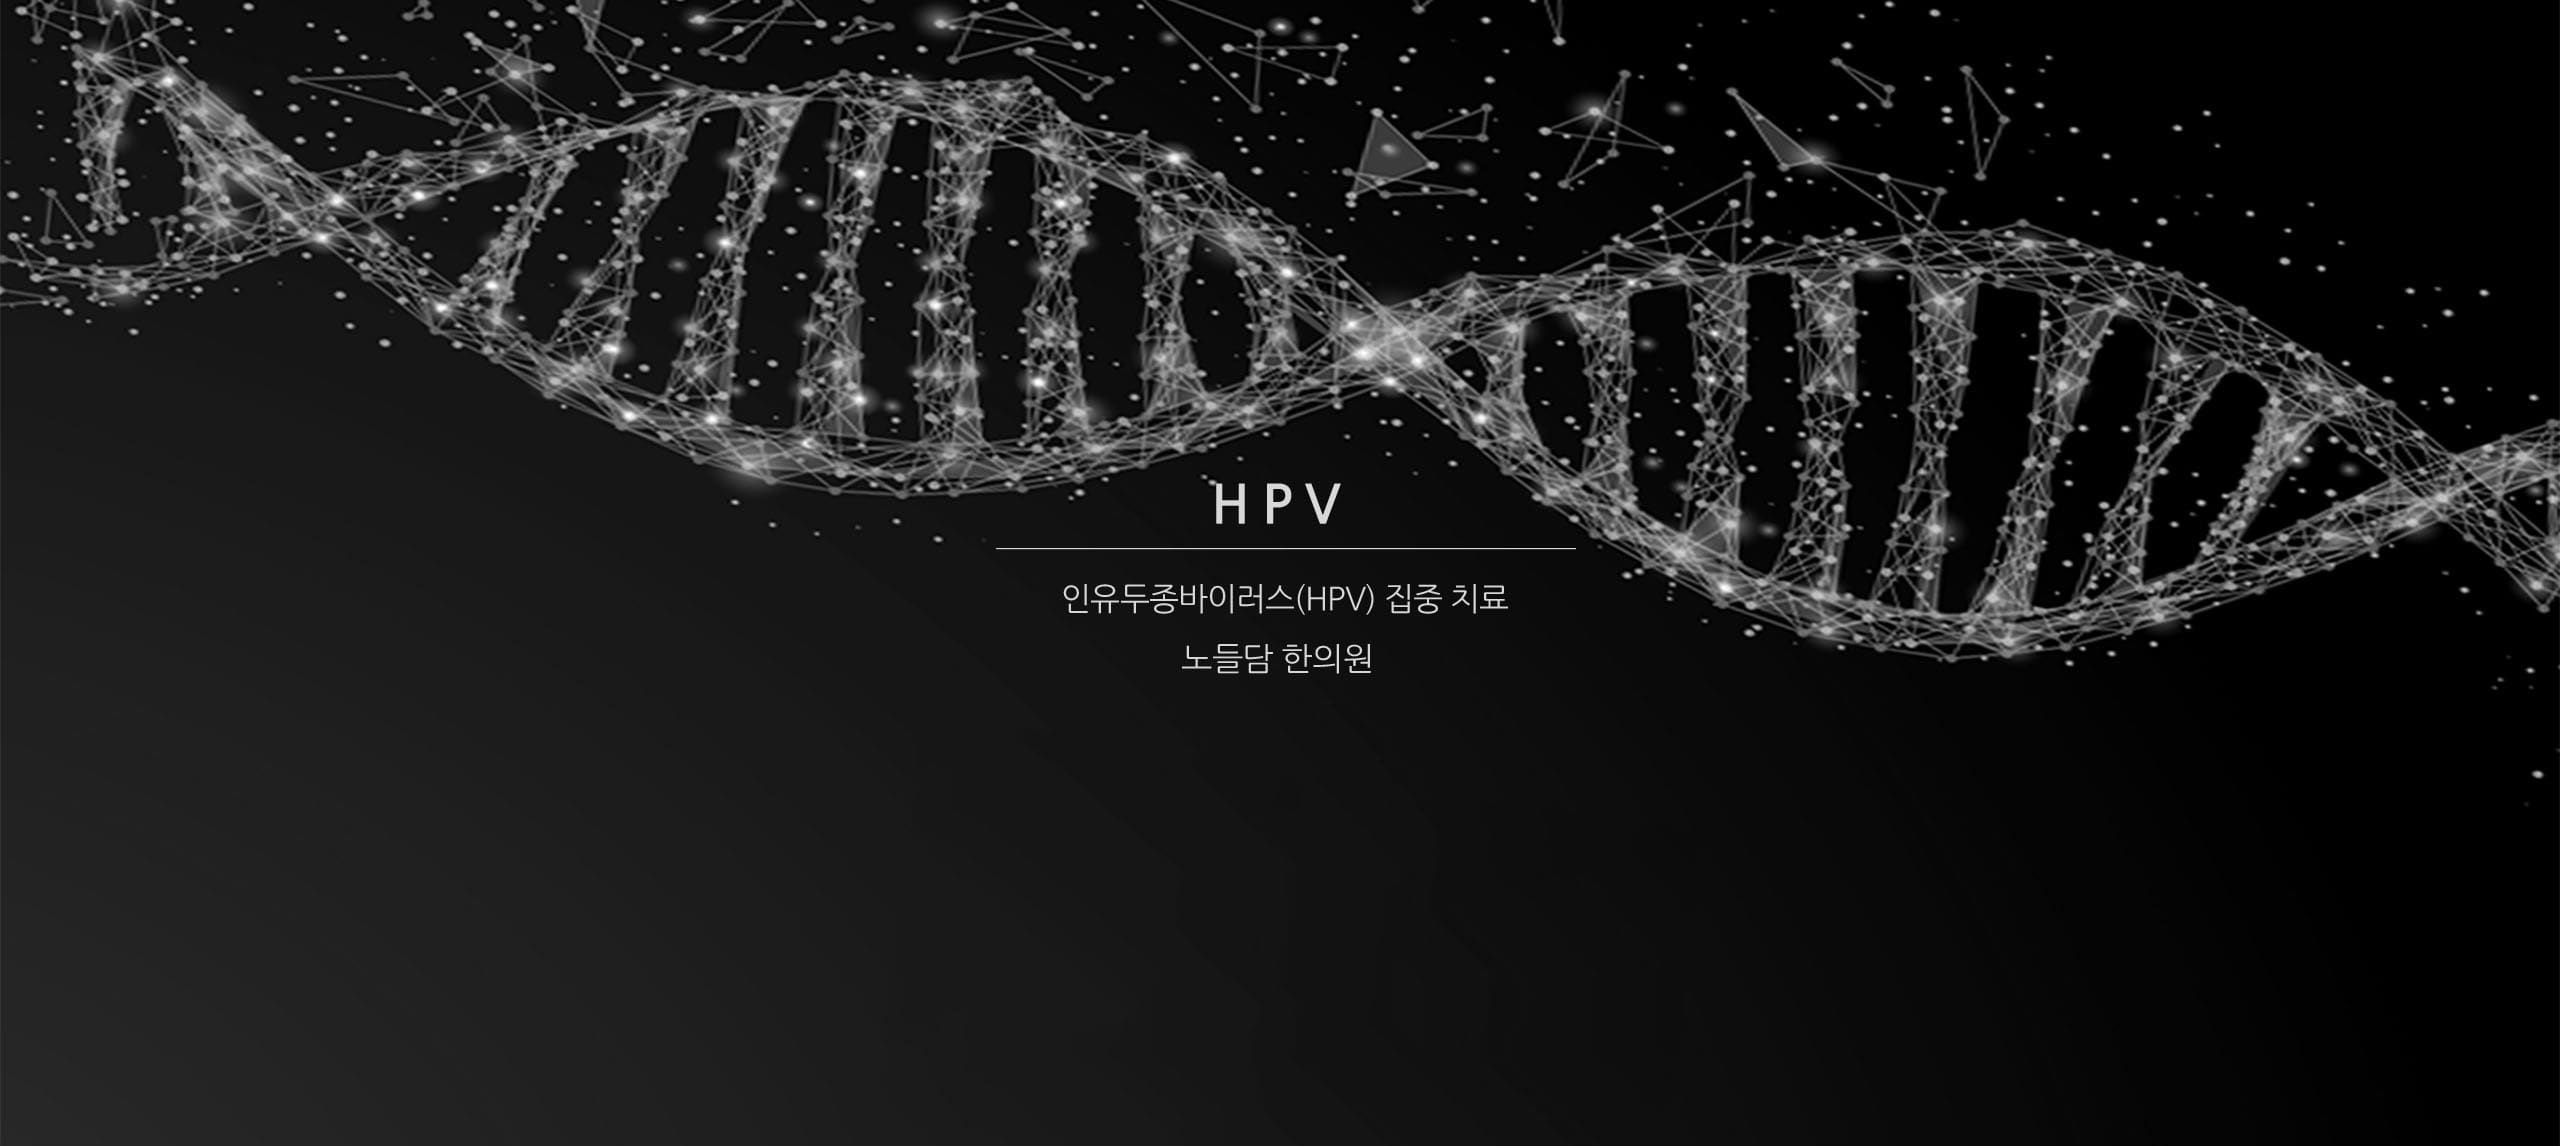 HPV 정보 헤드라인|인유두종바이러스 정보 표지